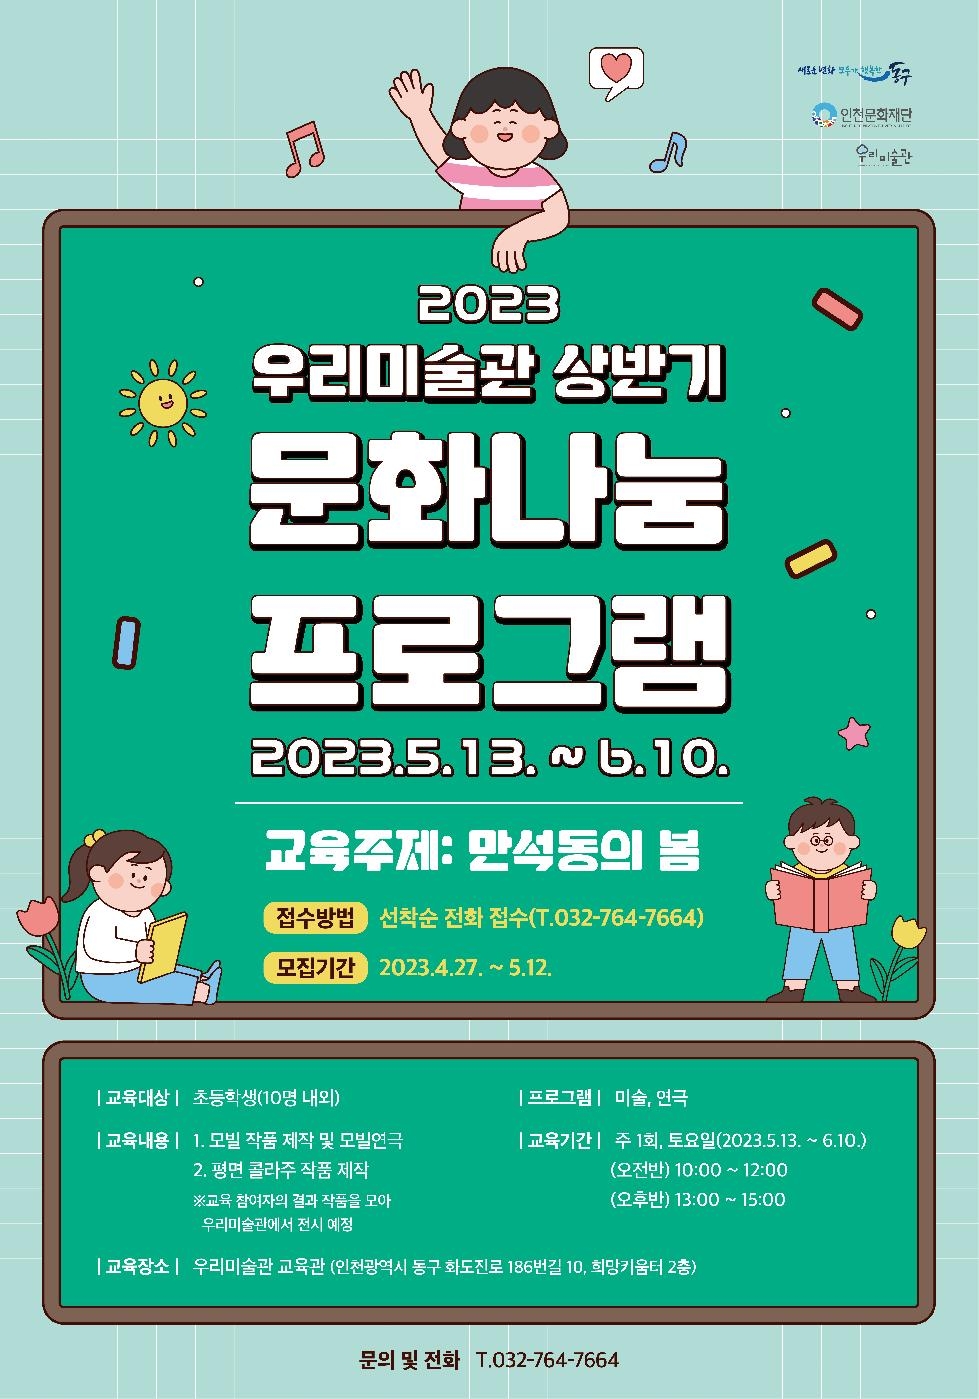 인천 동구 우리미술관, 상반기 문화나눔 프로그램 참여자 모집